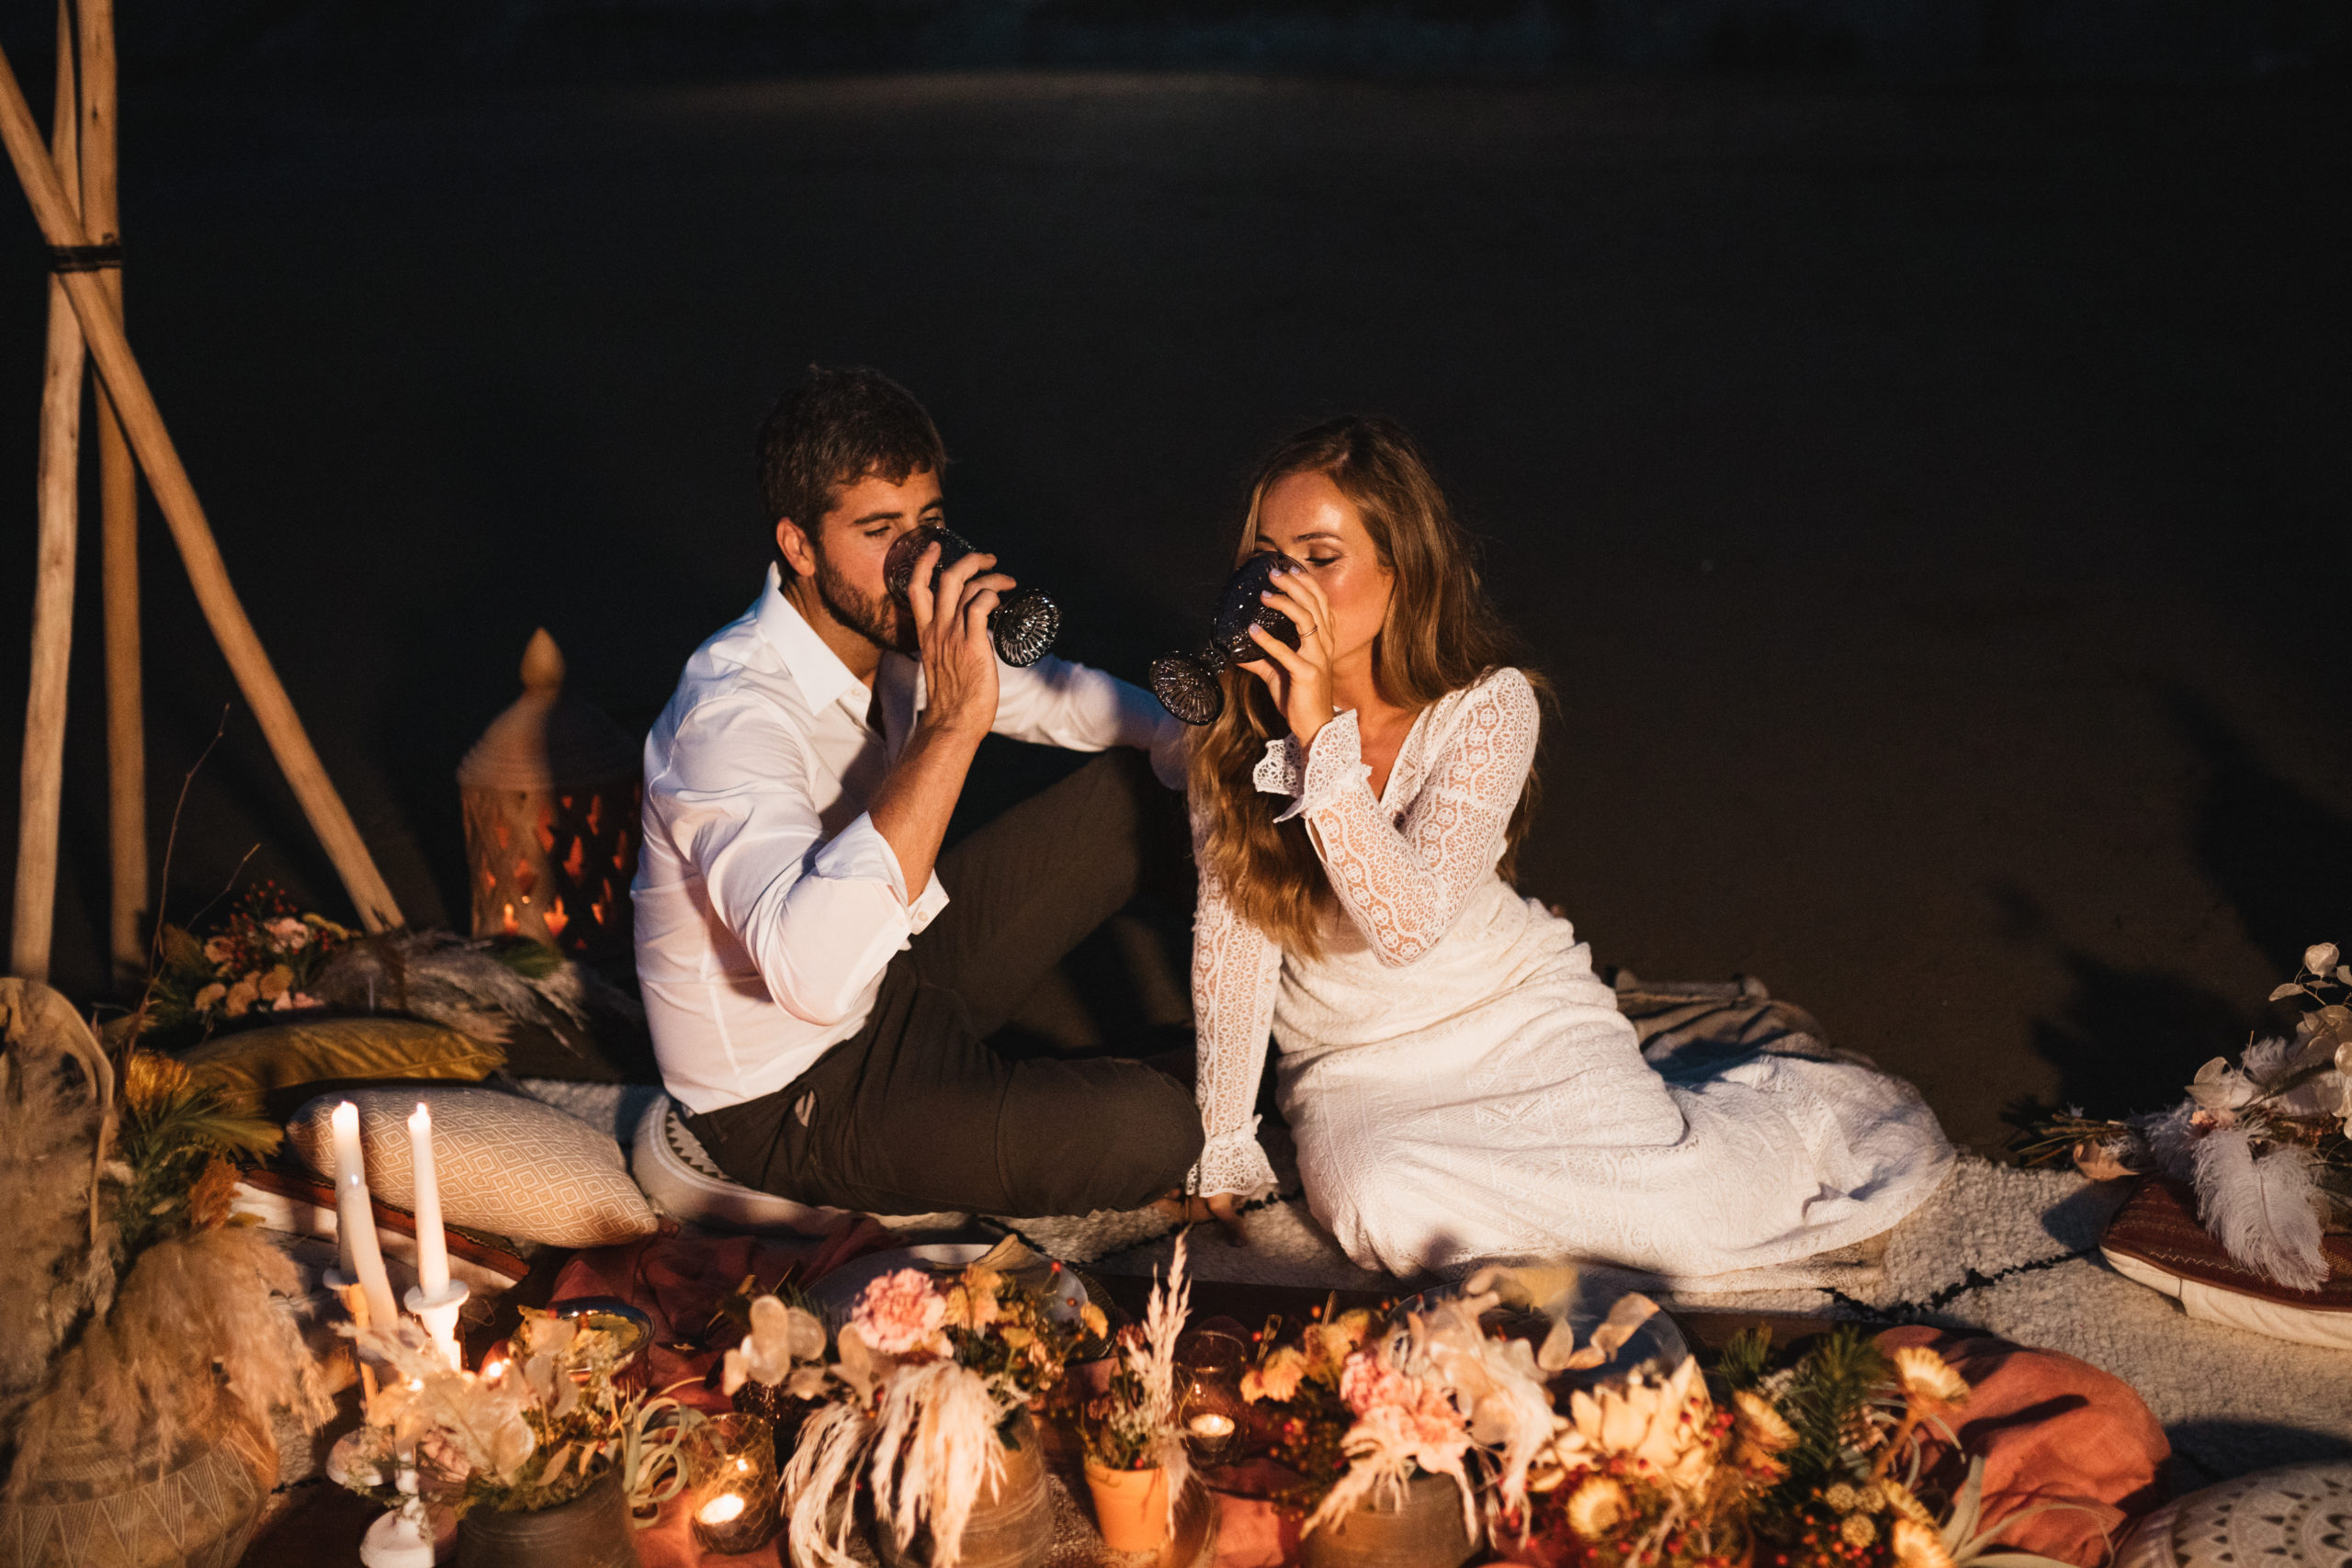 Novio y novia bebiendo de una copa, en una romántica cena íntima